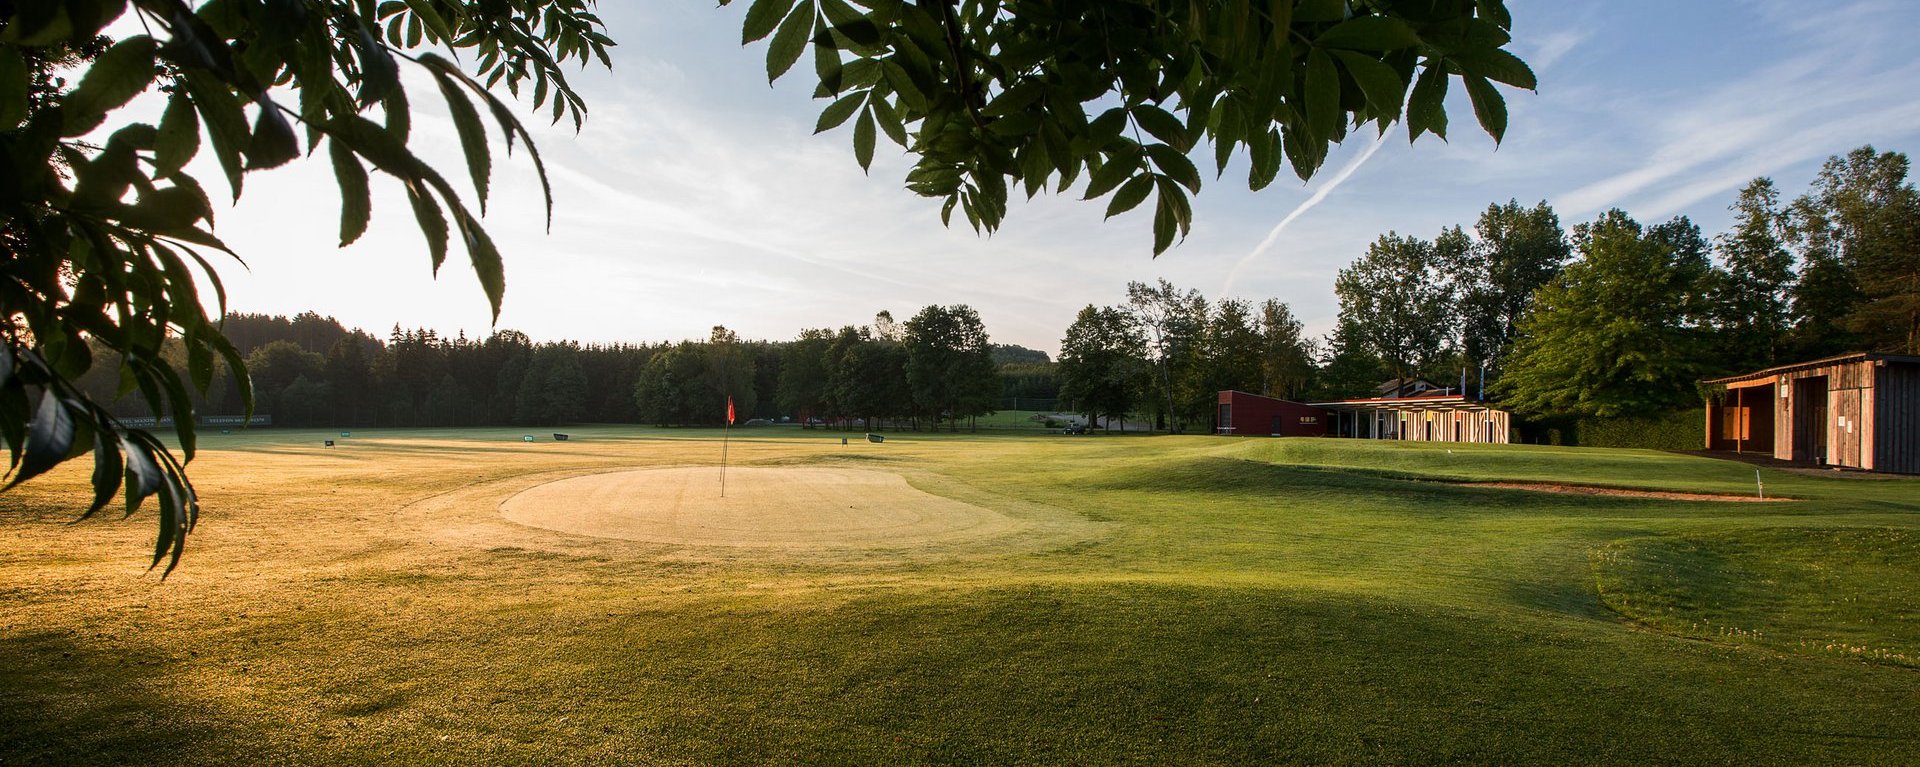 Die Drivingrange der Golfanlage des Allgäuer Golf- und Landclub e.V. im Licht der tiefstehenden Abendsonne